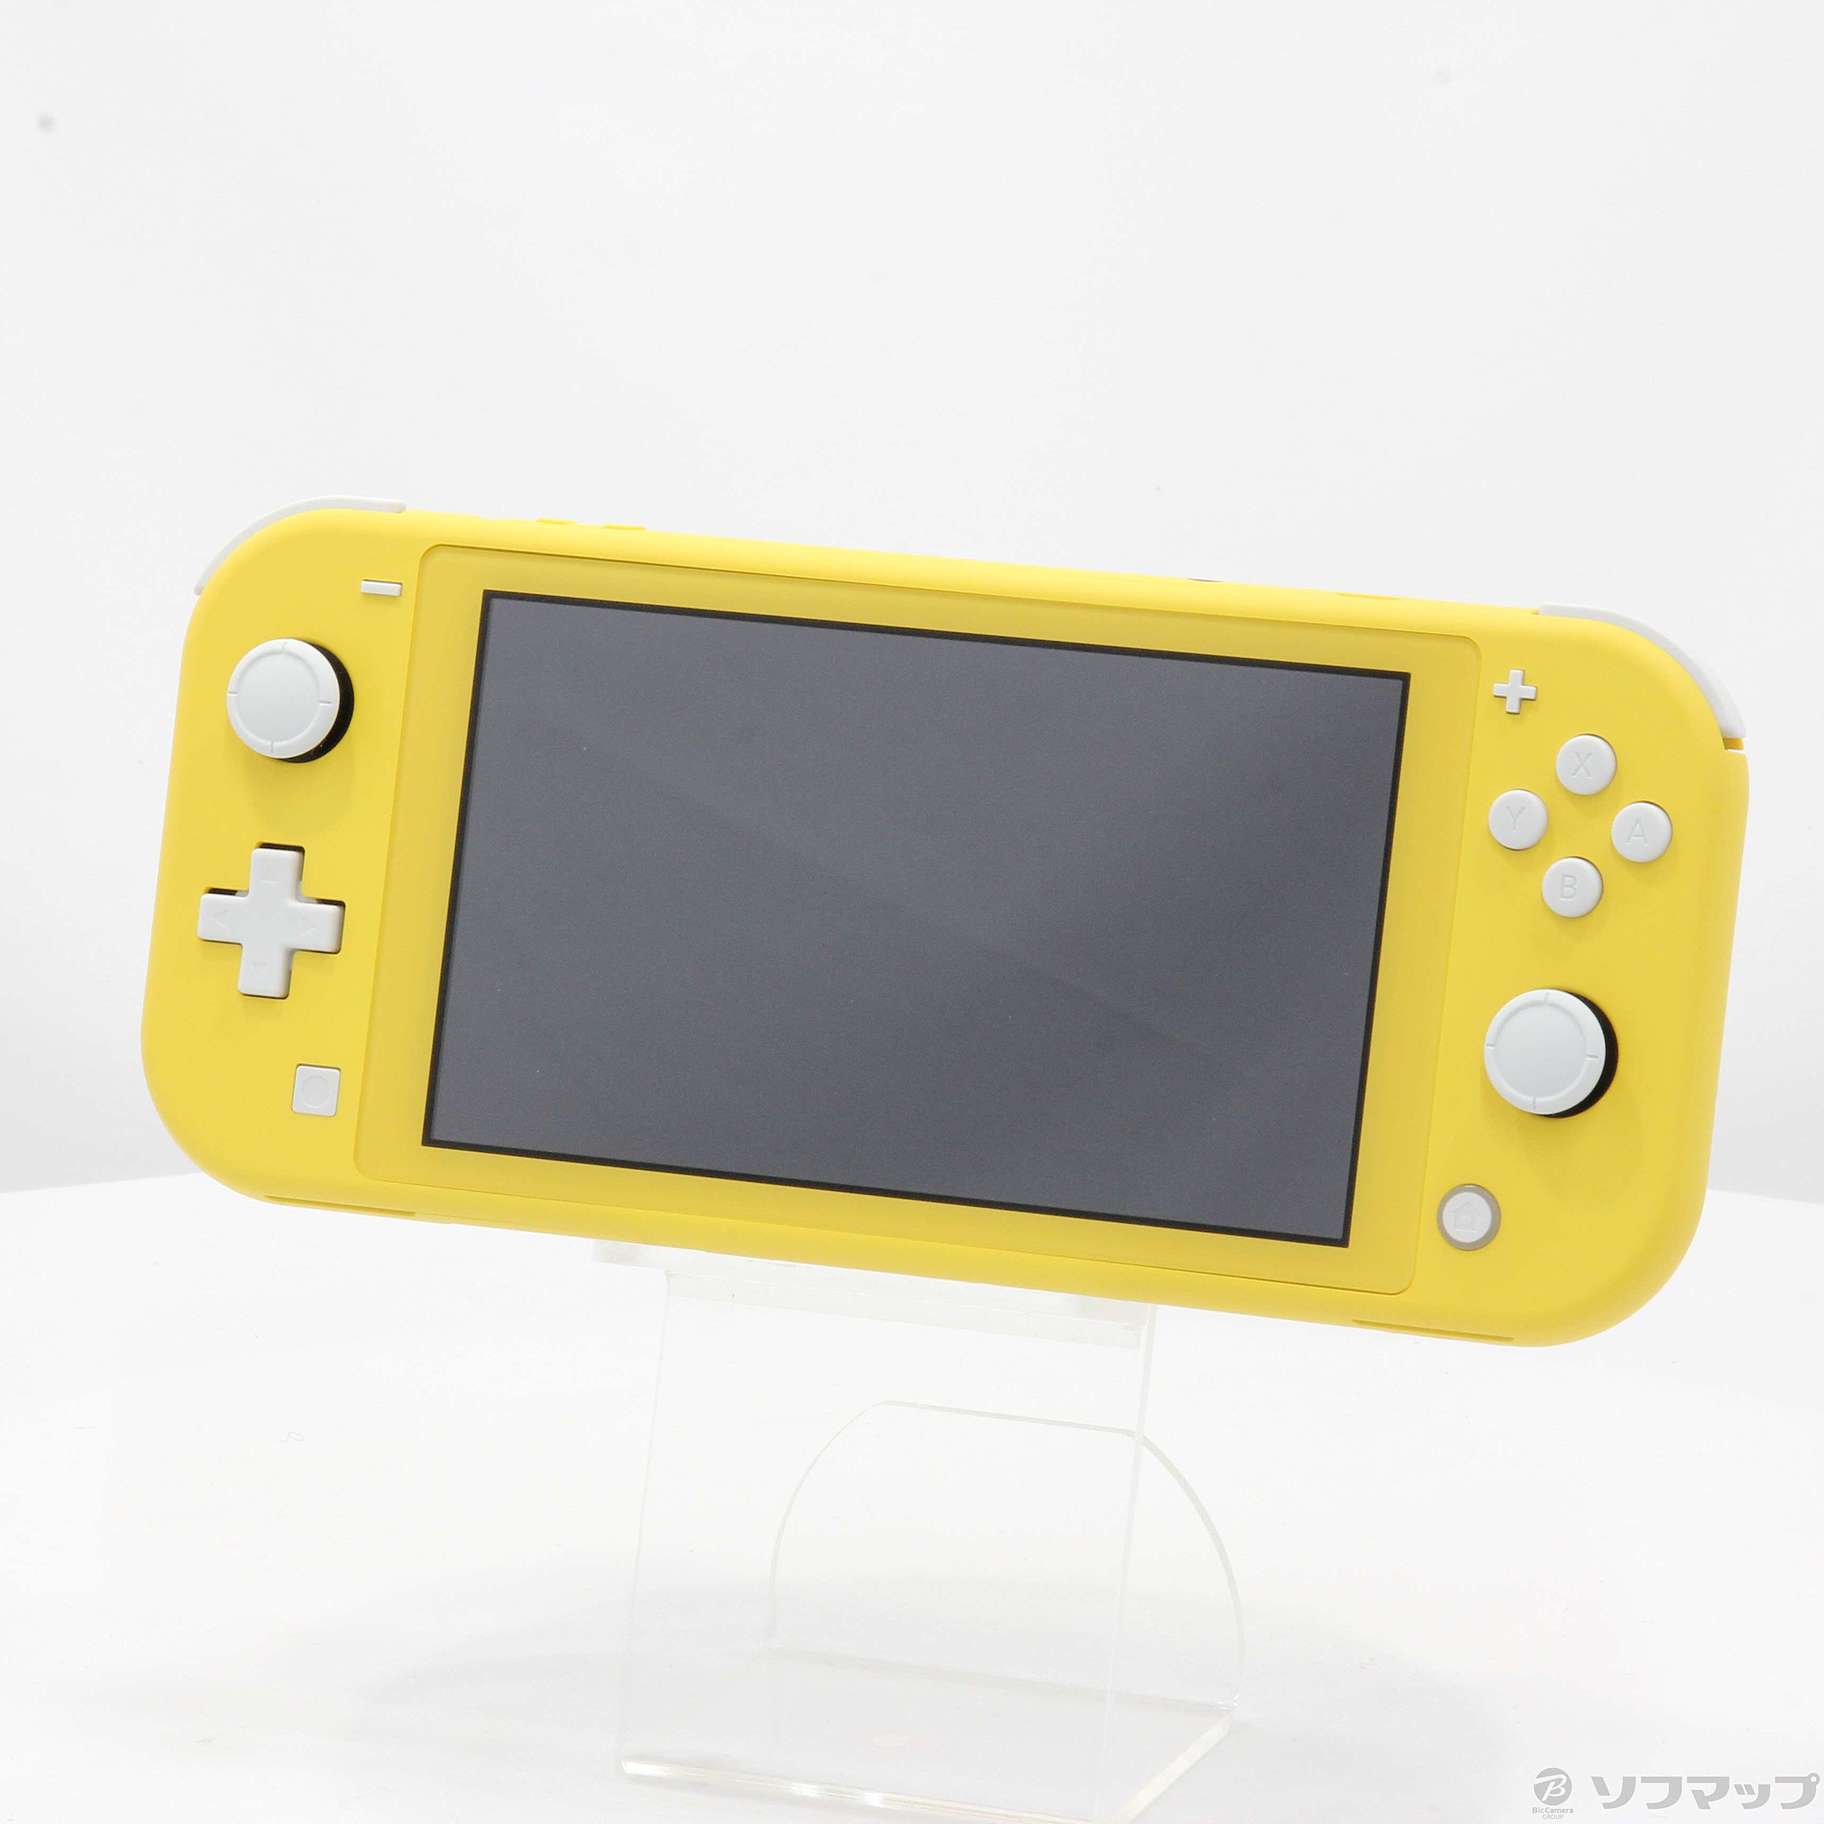 中古】セール対象品 Nintendo Switch Lite イエロー ◇10/08(金)値下げ ...